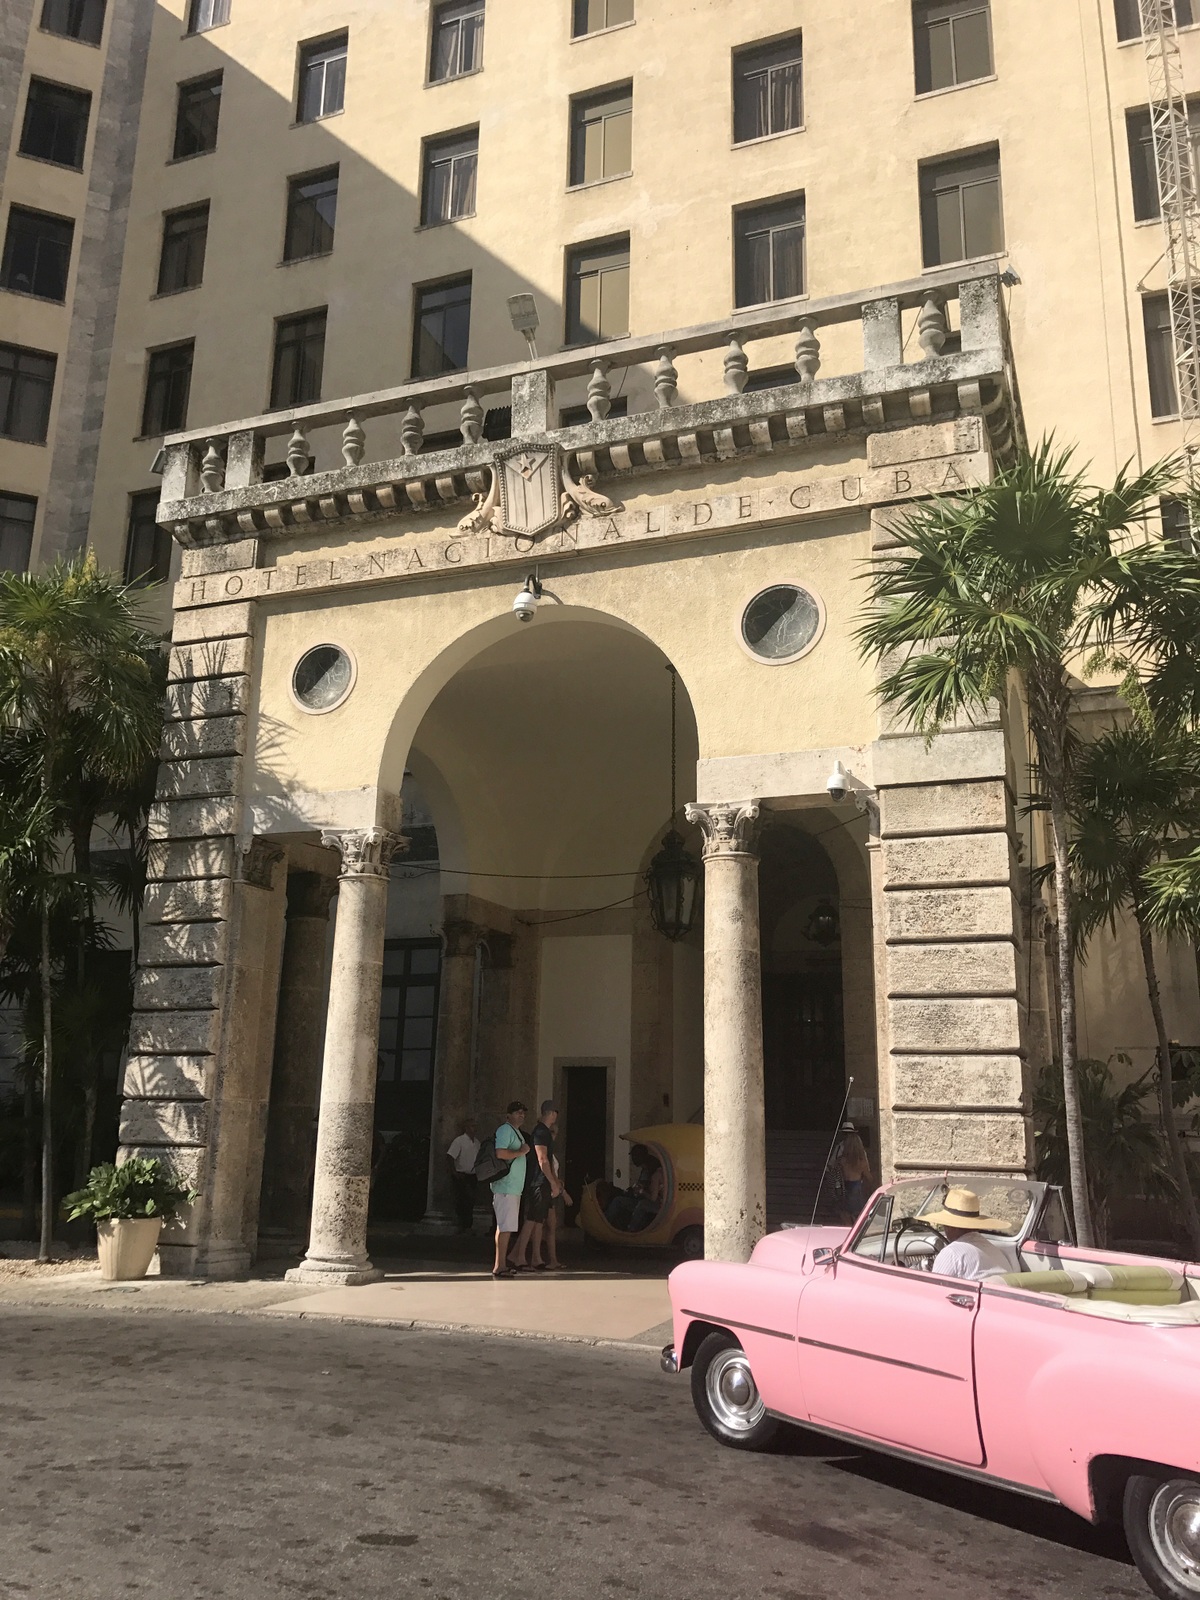 hotel nacional de cuba 